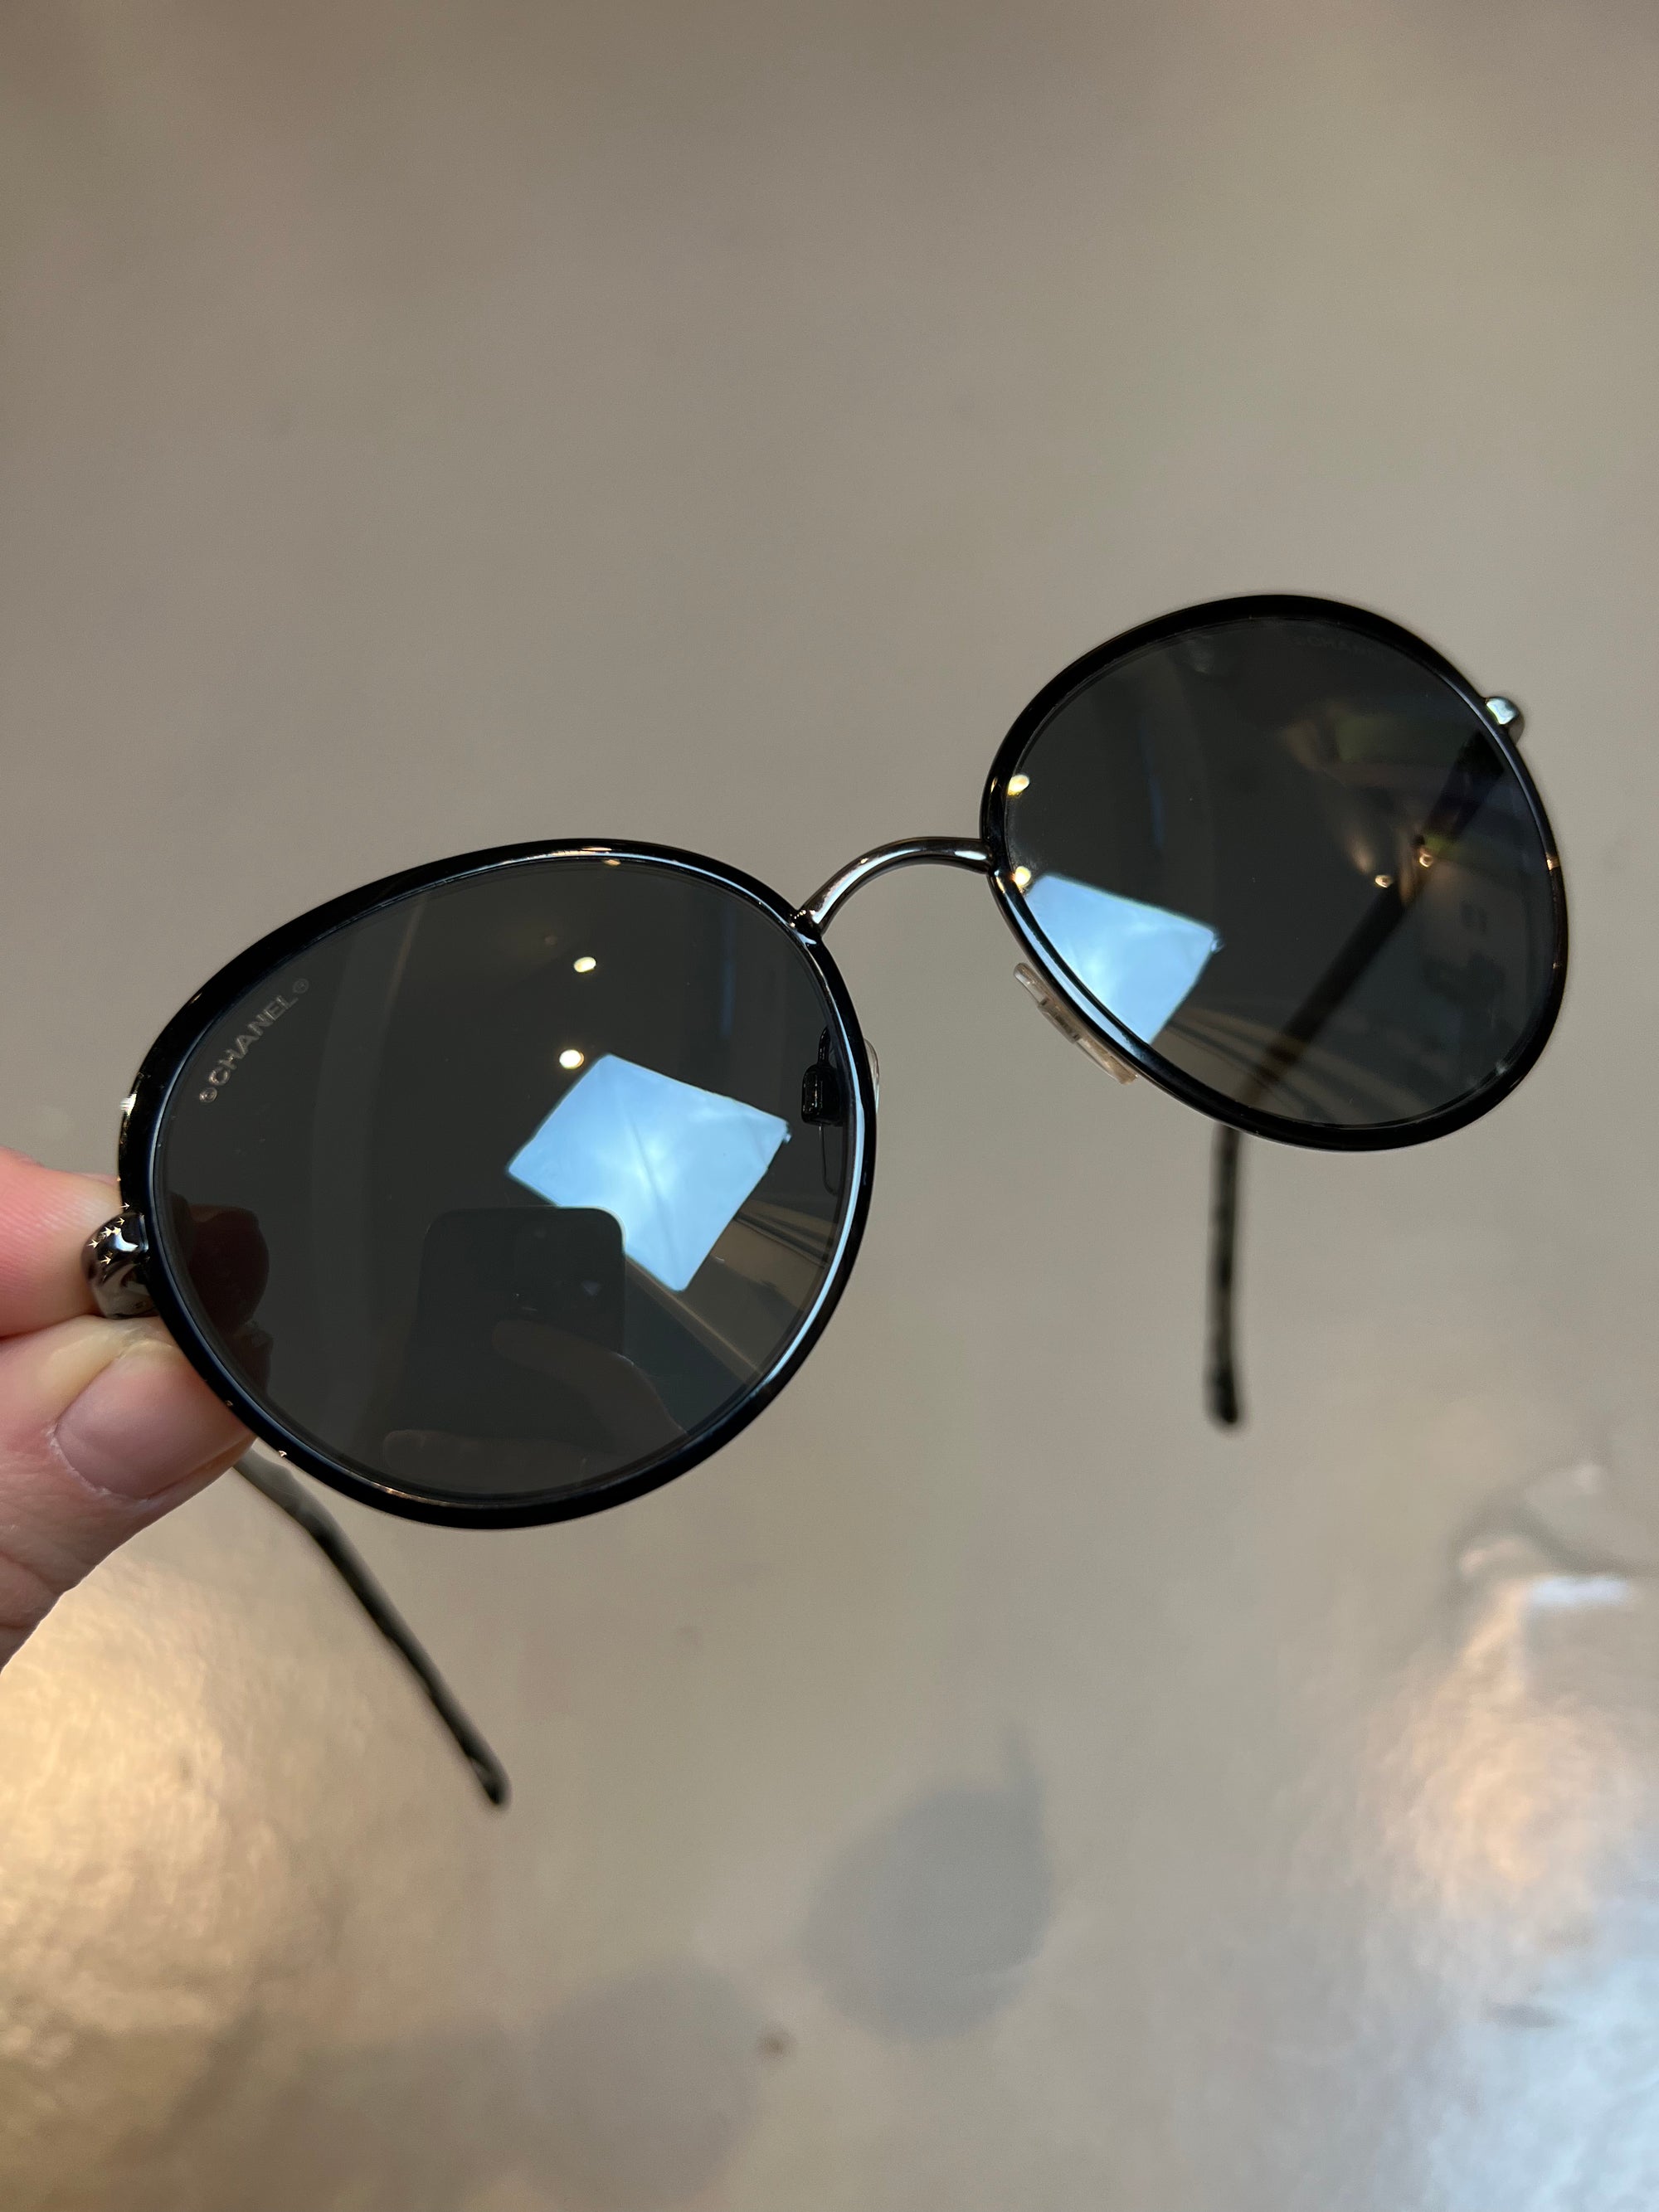 Produktbild einer runden Chanel Sonnenbrille in schwarz vor grauem Hintergrund.